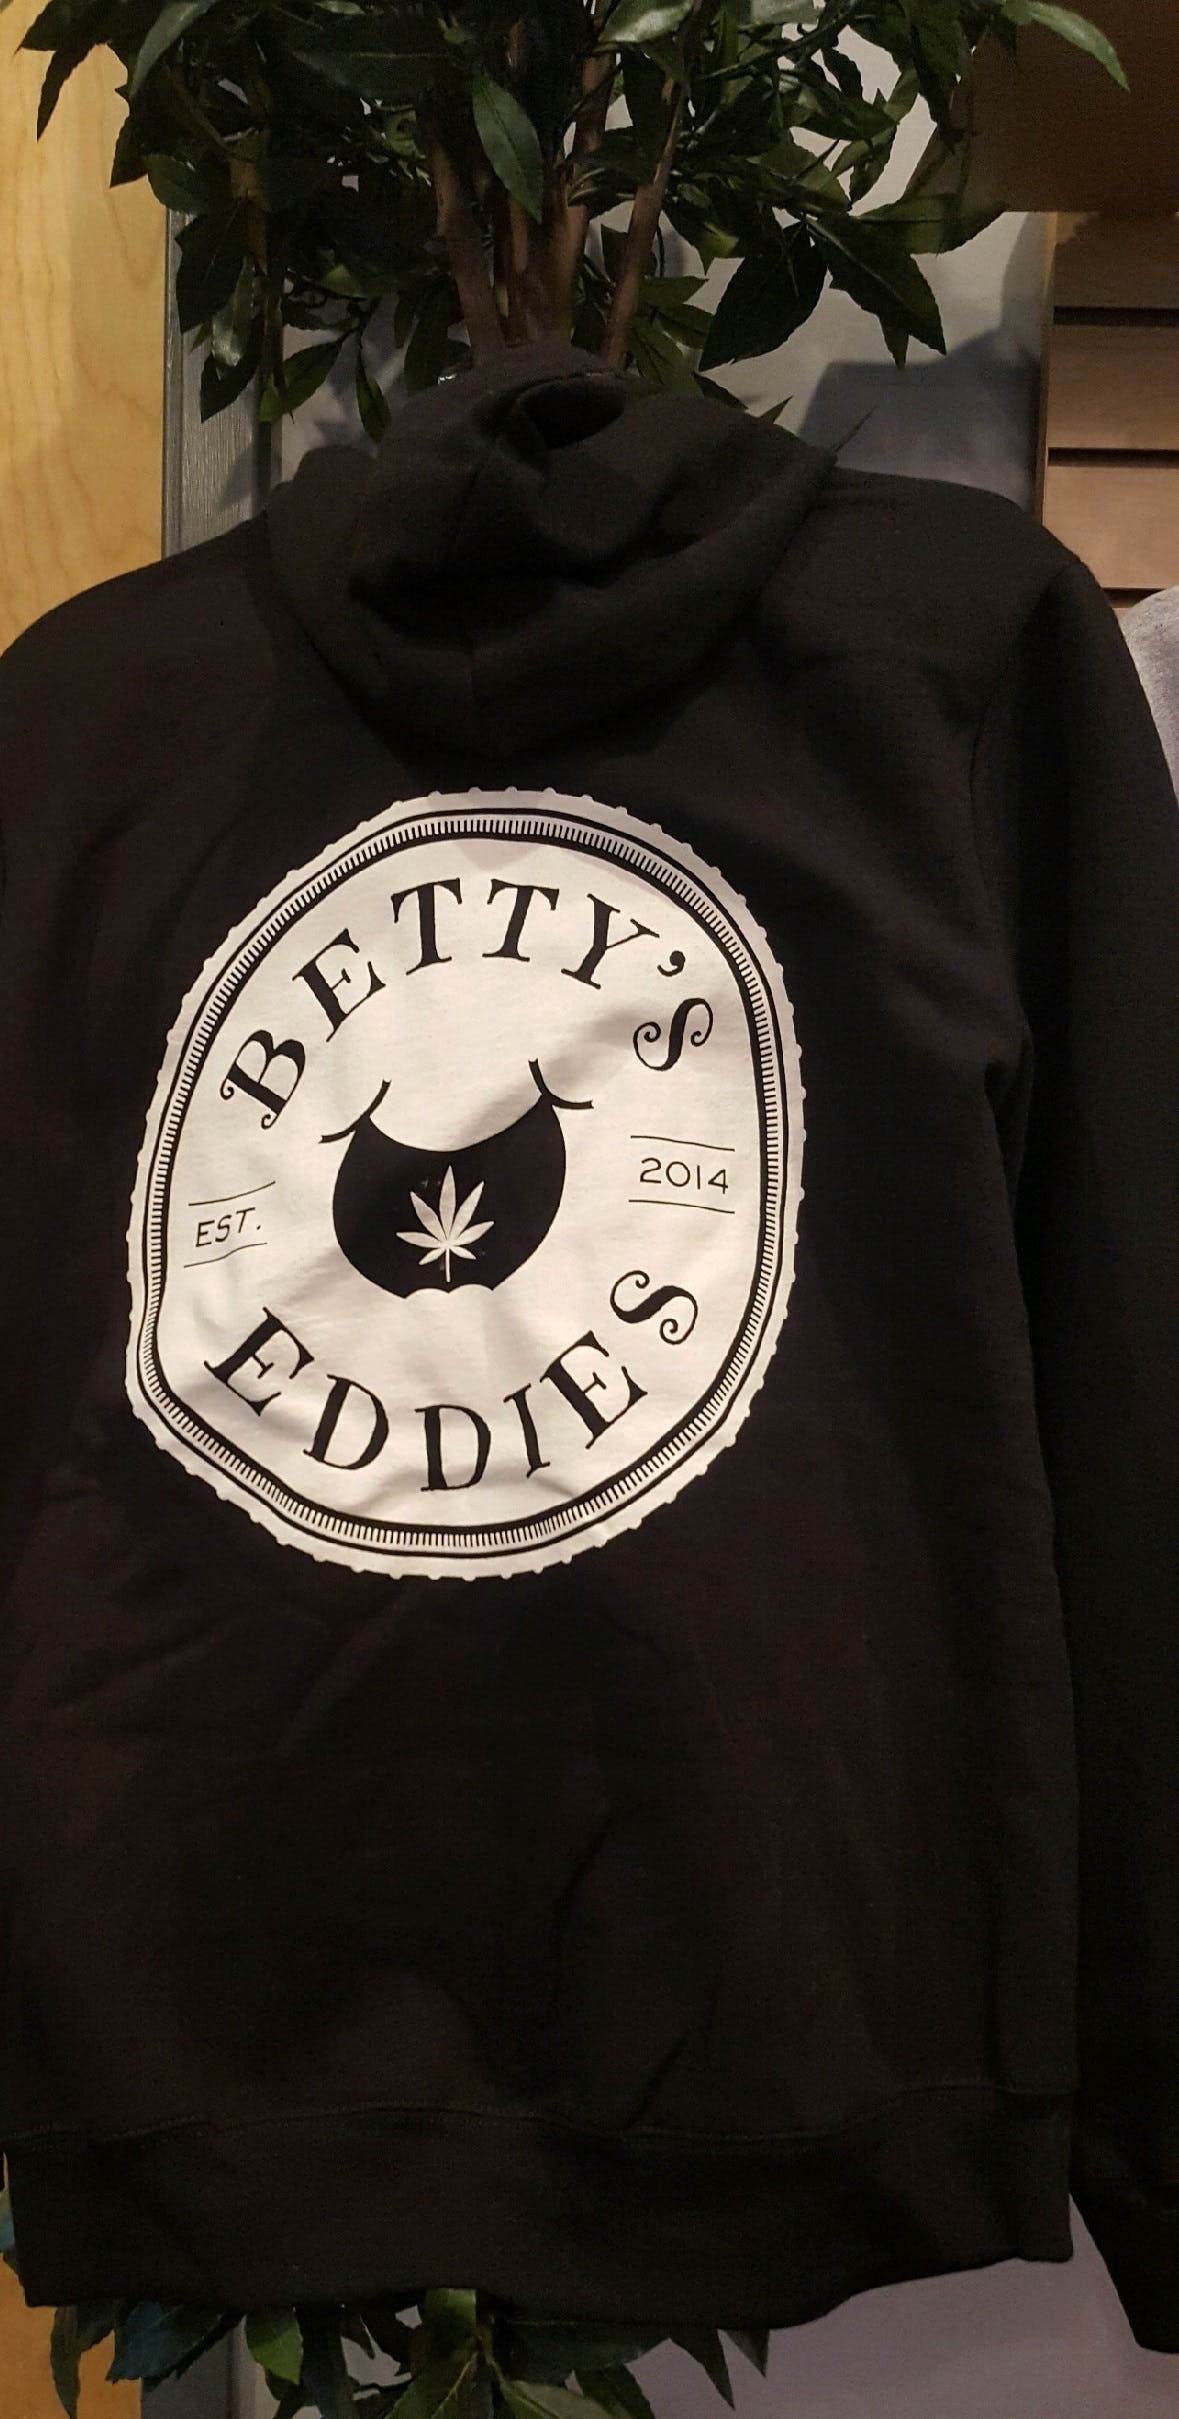 gear-bettys-eddies-hoodie